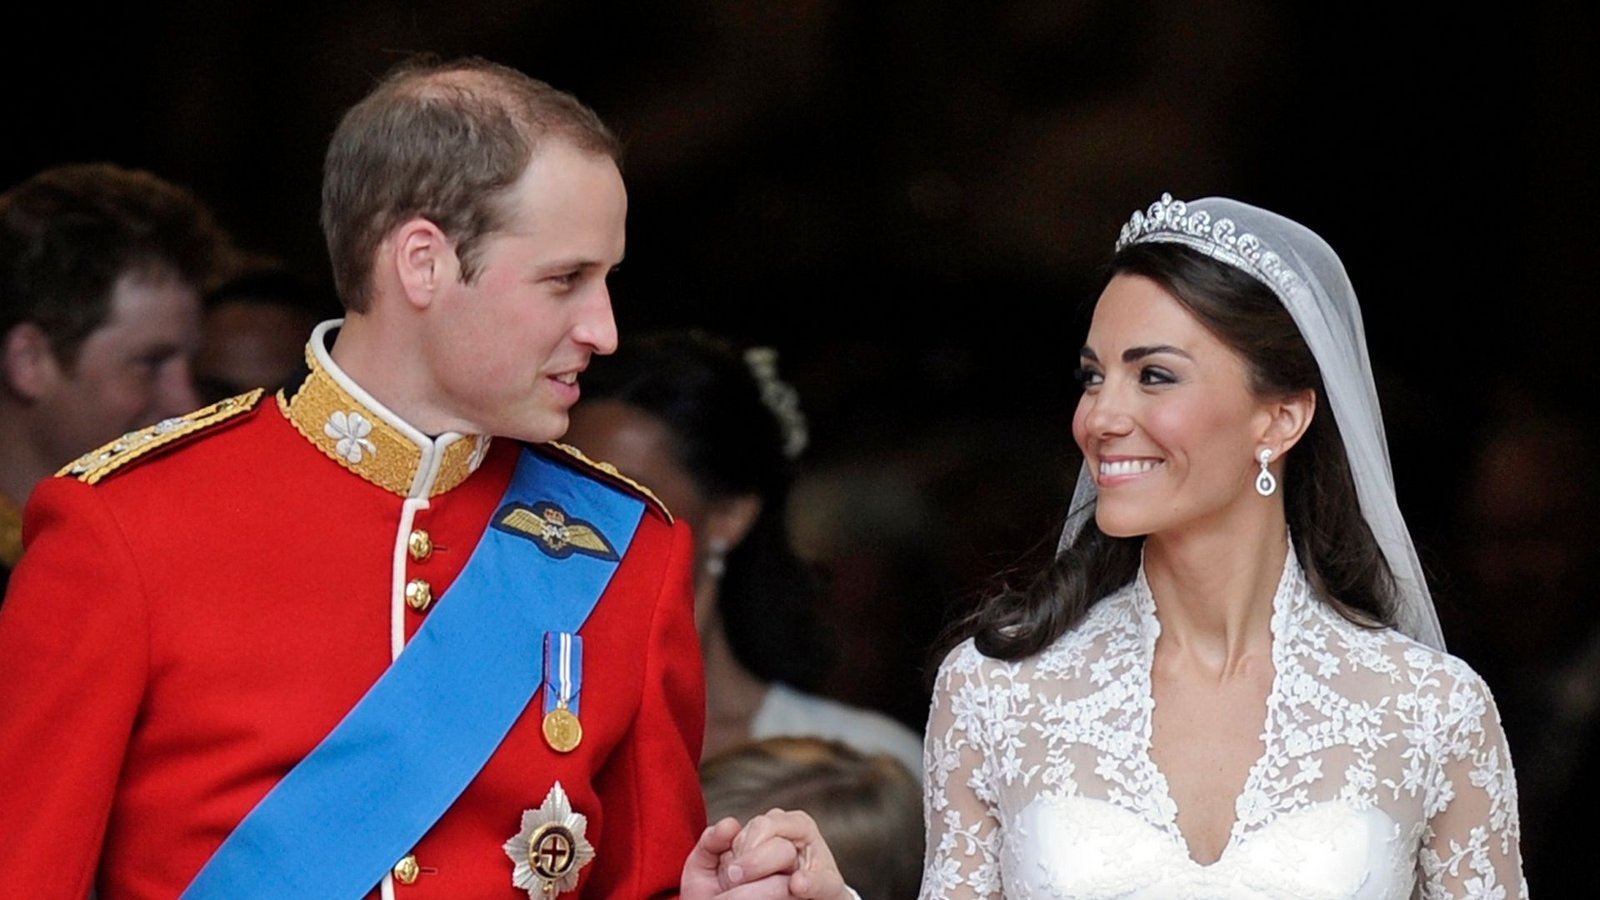 Die Hochzeit des britischen Prinzen William und seine Frau Kate, Herzogin von Cambridge, ist 13 Jahre her.Foto: Martin Meissner/AP/dpa